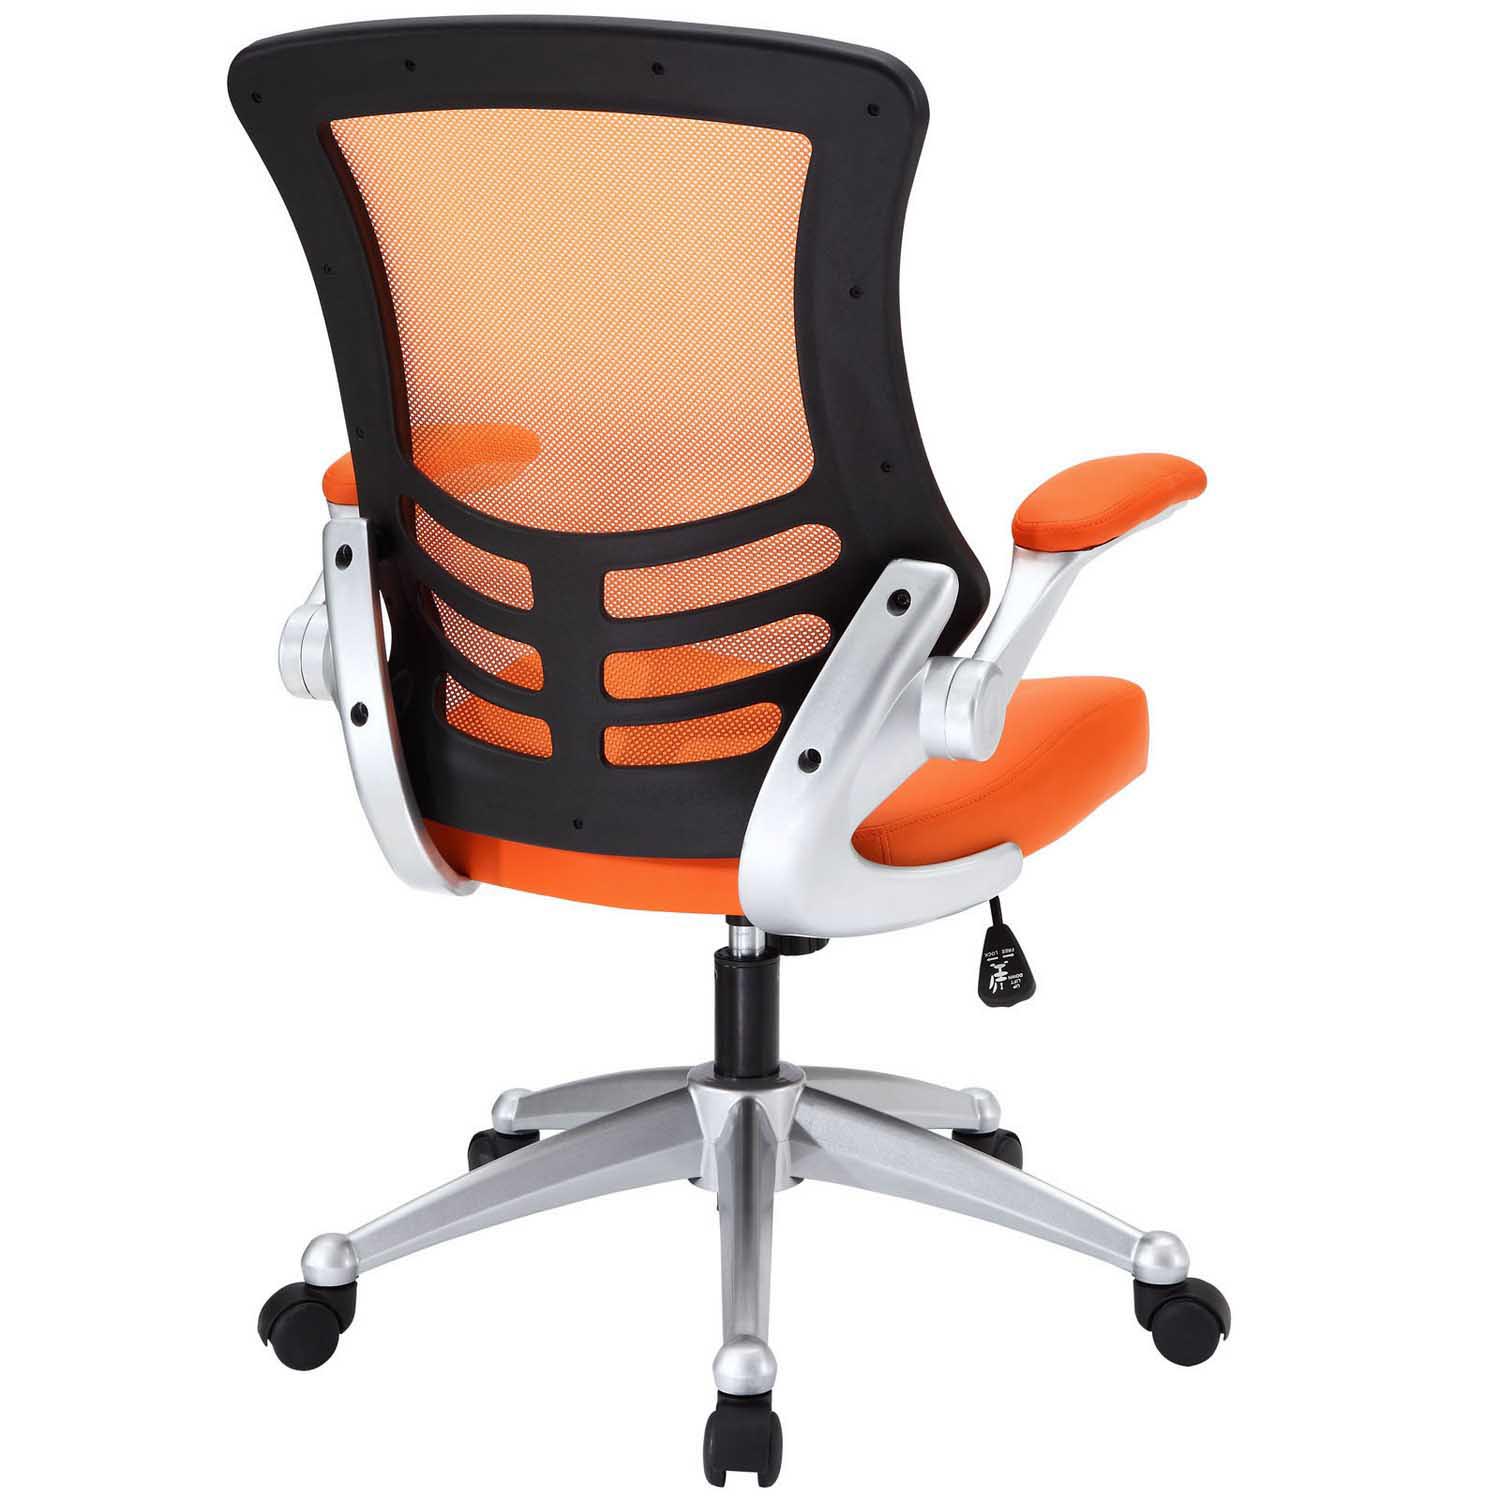 Modway Attainment Office Chair - Orange